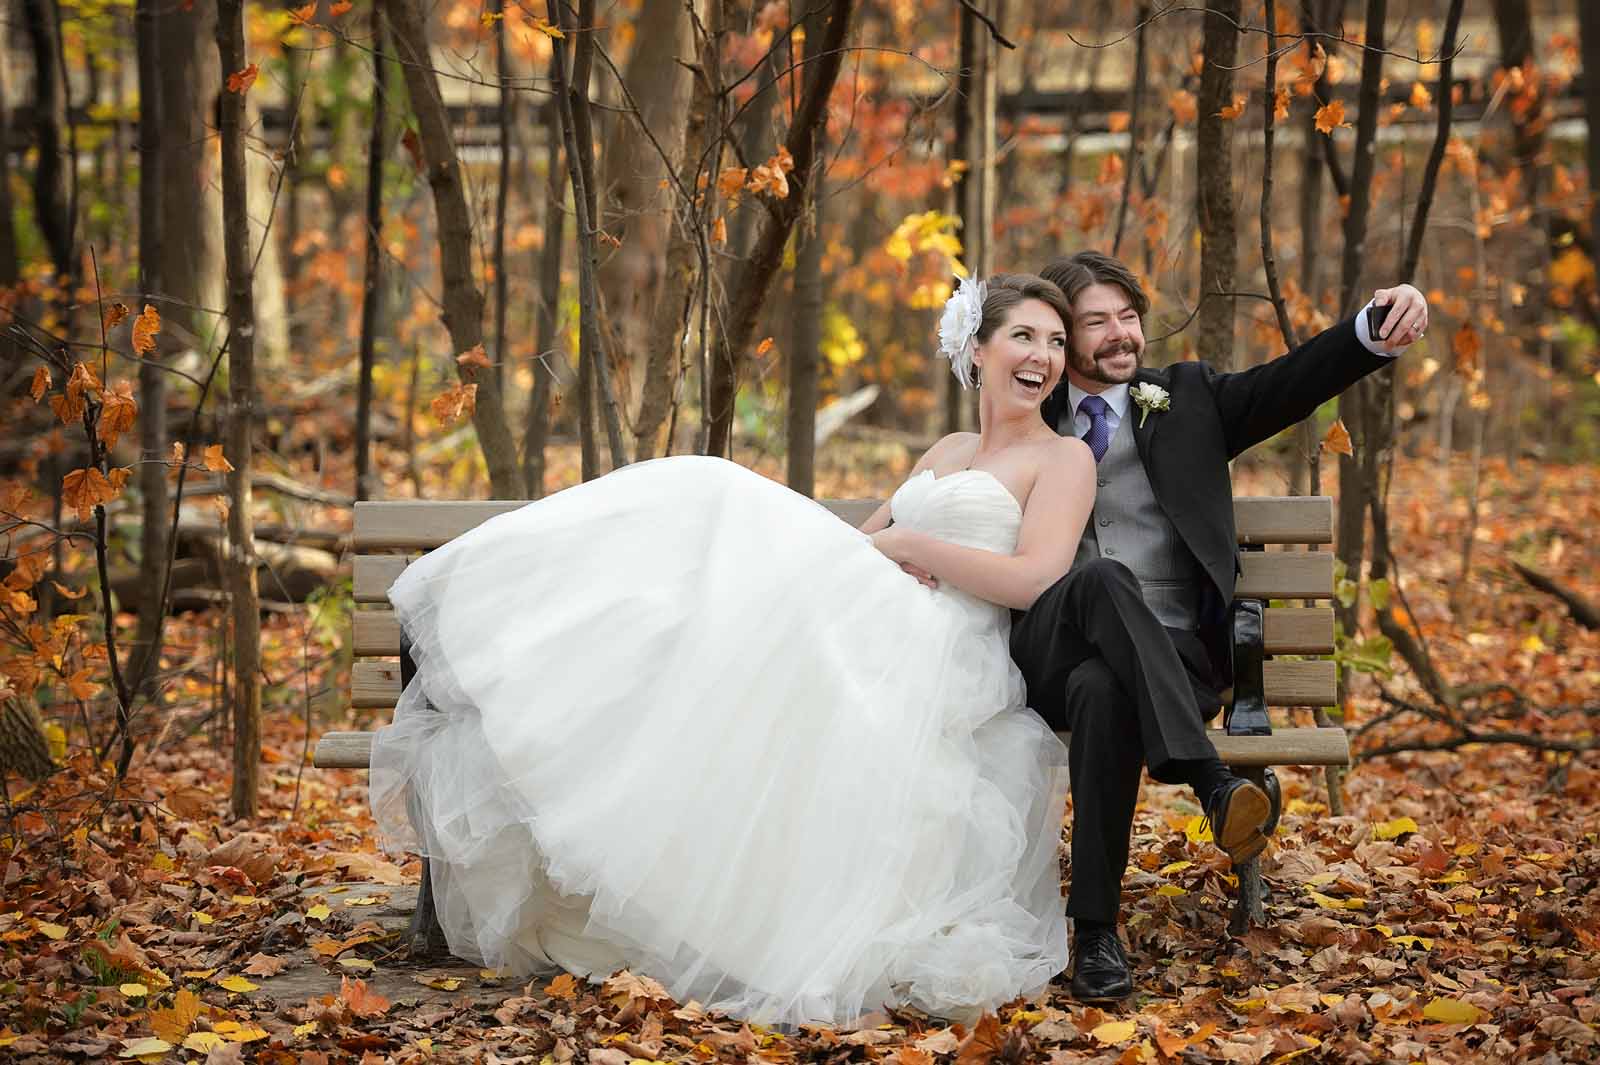 Ottawa Wedding And Engagement Photography · Elizabethandjane Photography